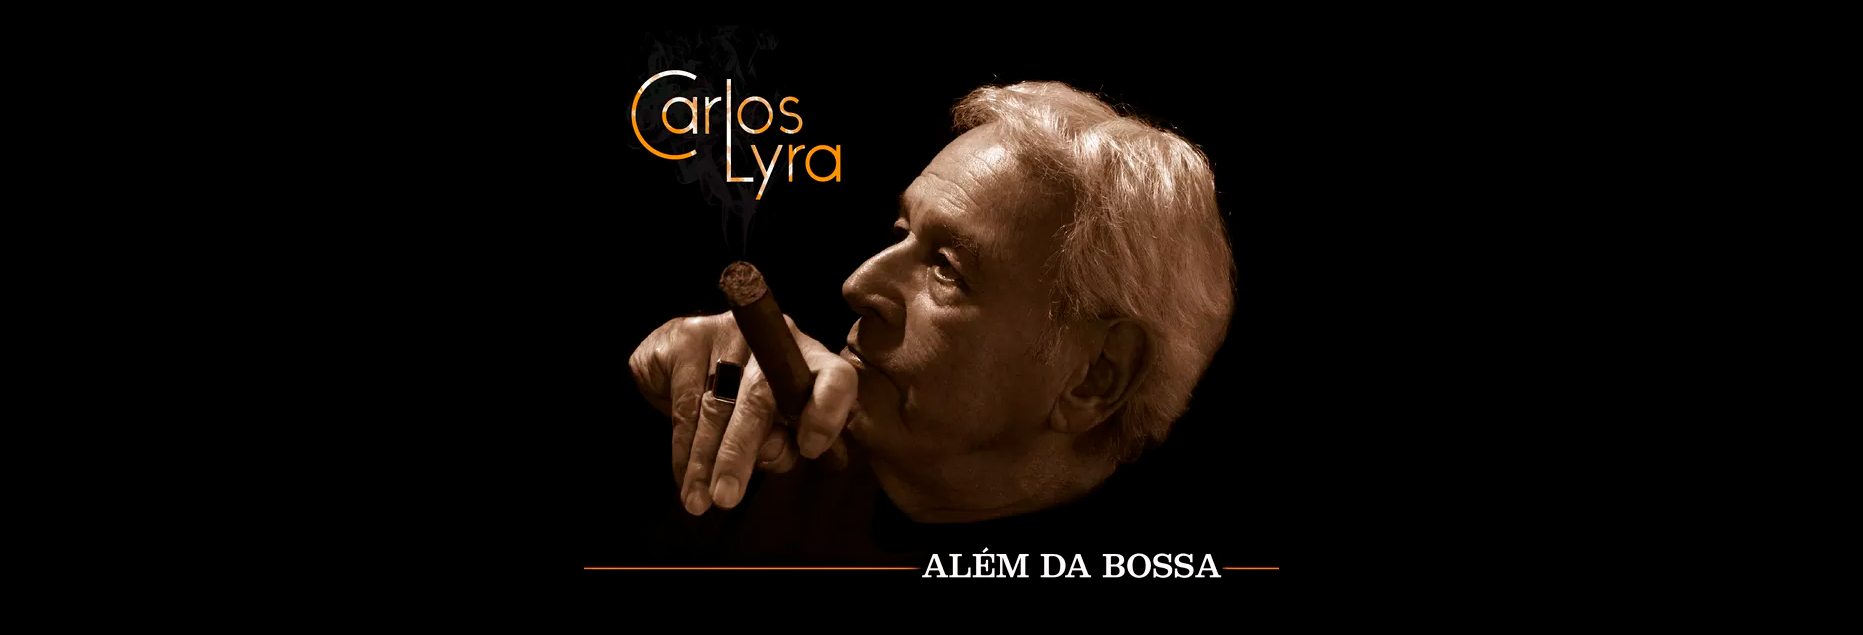 No novo CD, Carlos Lyra vai “Além da Bossa”